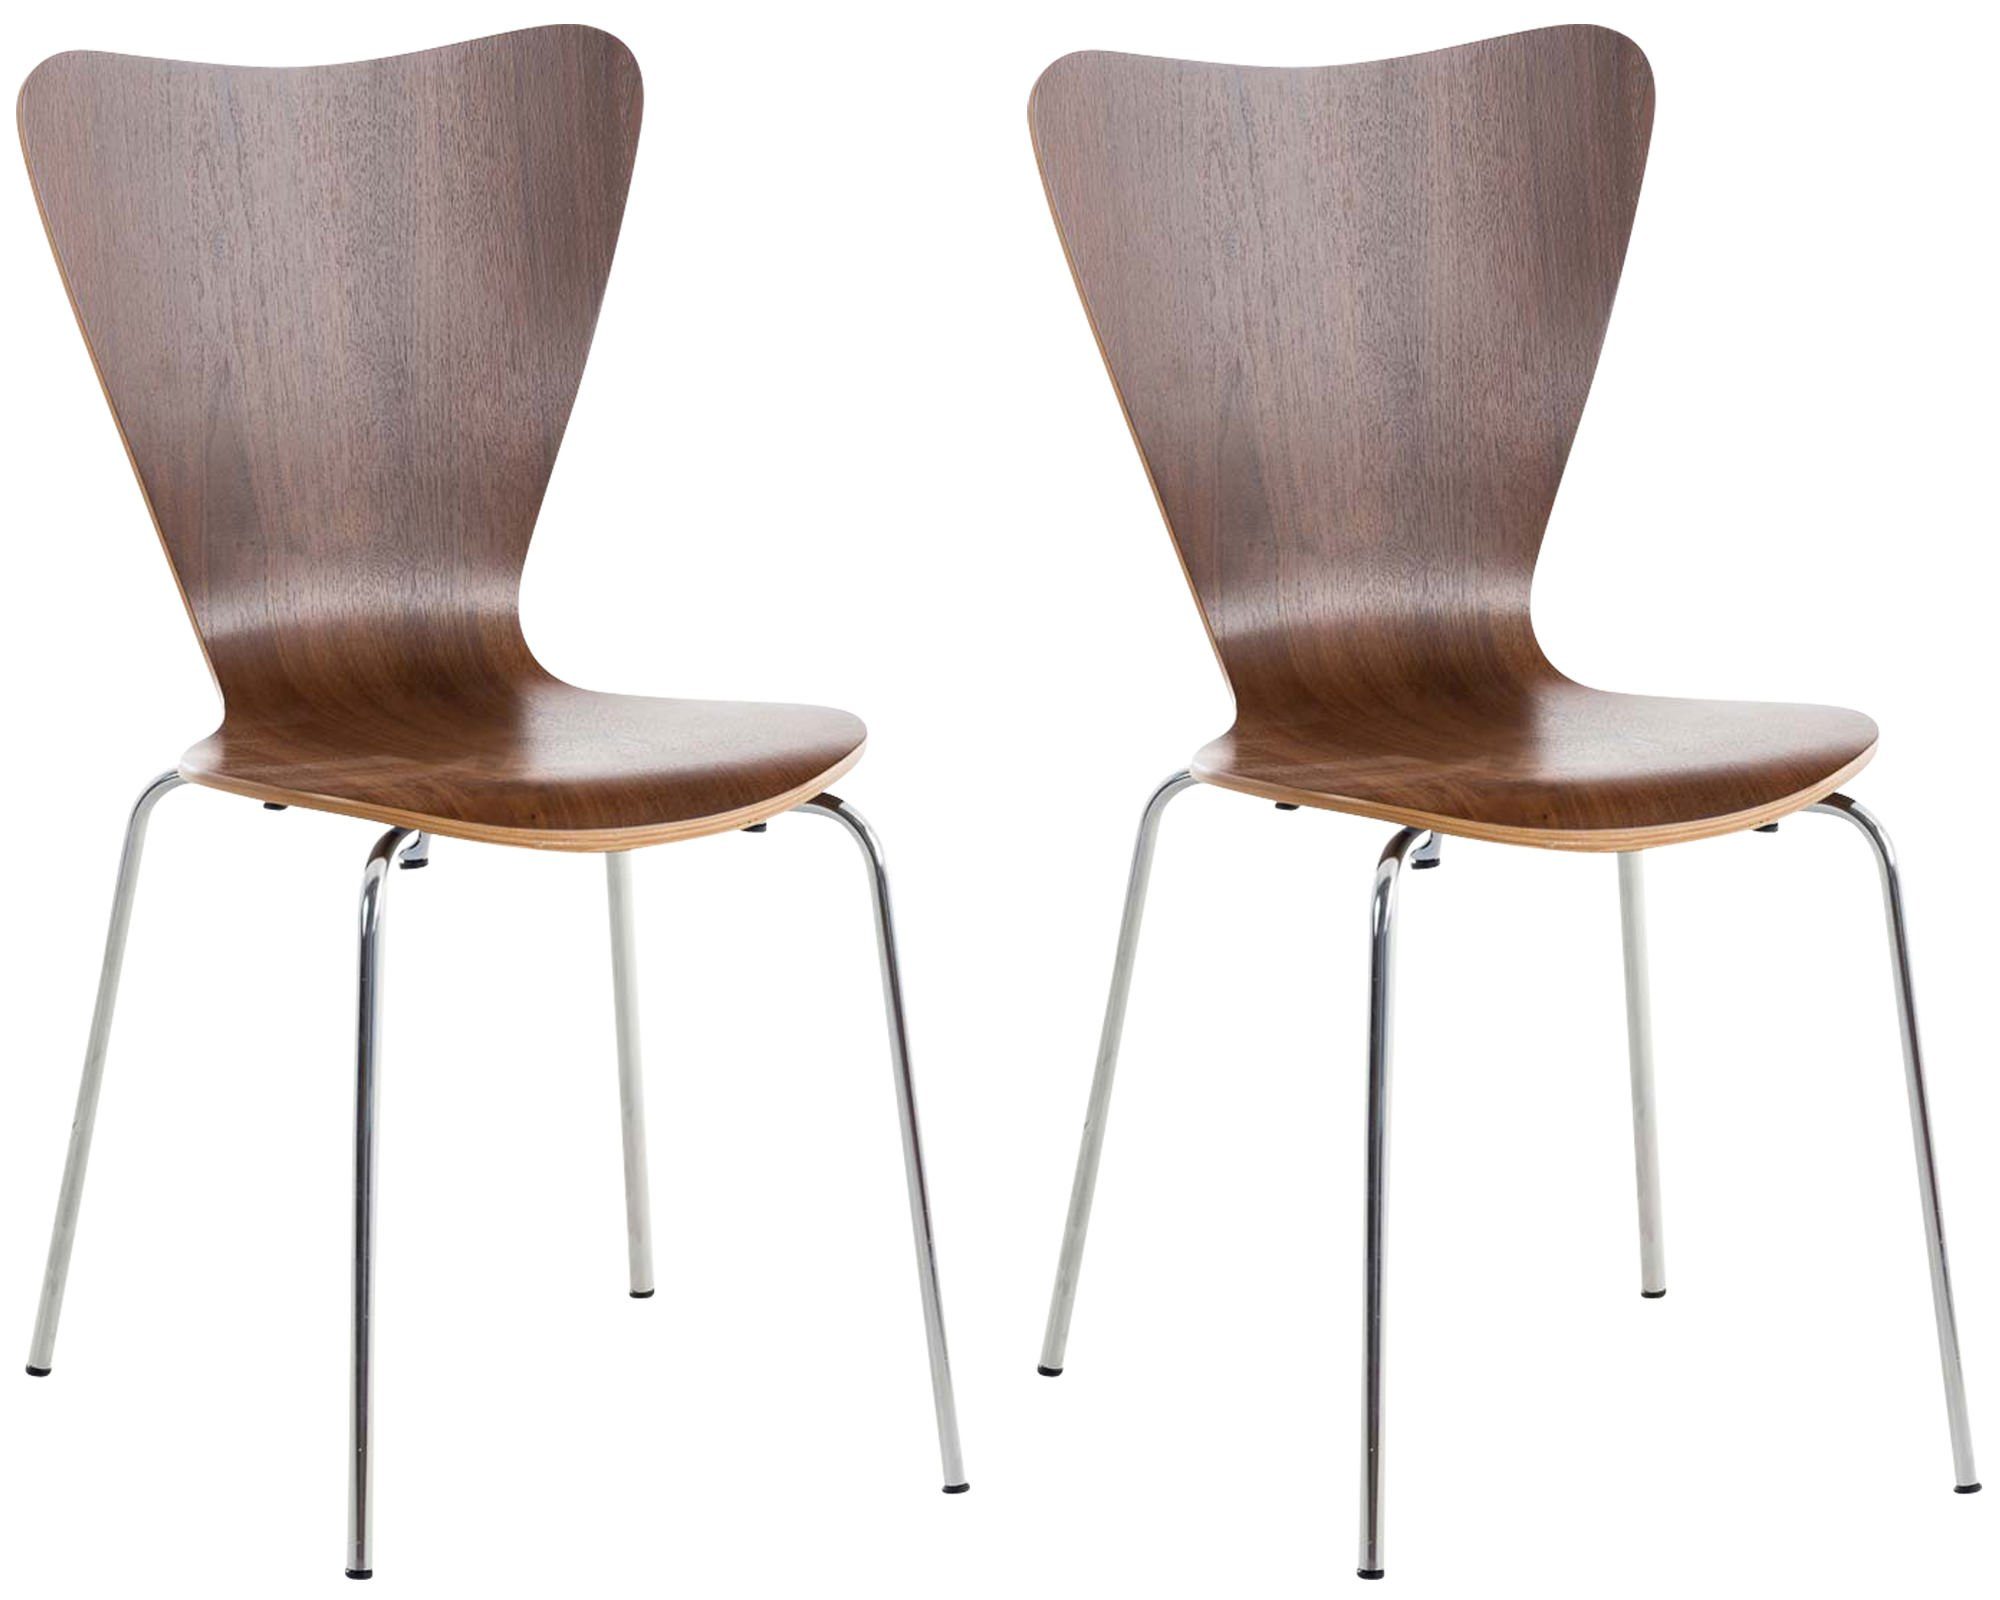 Warteraumstuhl Calisso 2 (Besprechungsstuhl Holz ergonomisch - Messestuhl, Sitzfläche: geformter TPFLiving St), Konferenzstuhl Sitzfläche - Walnuss - - Gestell: Besucherstuhl Metall mit chrom